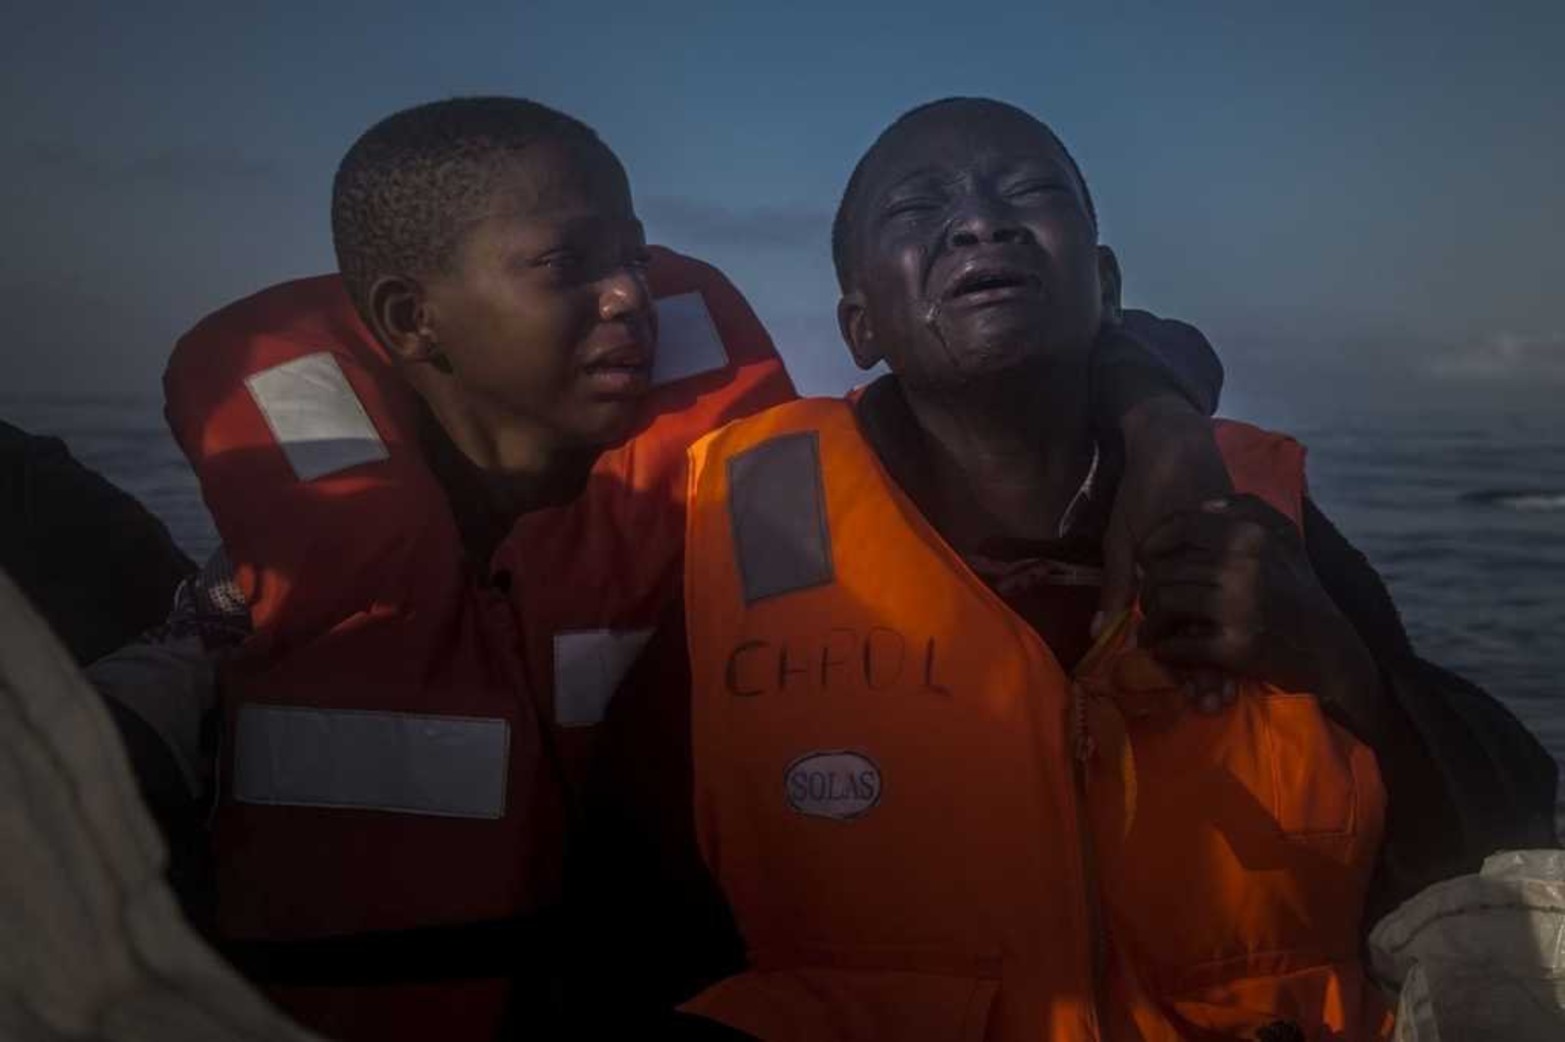 Imagen tomada por Santi Palacios ganadora del segundo premio en la categoría "Temas de Actualidad" de los premios World Press Photo. La imagen muestra a dos hermanos nigerianos, una niña de 11 y un niño de 10 años, que lloran a bordo de un barco de una ONG que les rescató en alta mar el 28 de julio de 2016. Los pequeños navegaron durante horas en una patera junto a otros refugiados y fueron localizados a 23 kilómetros de la costa libia. Ambos menores dijeron que su madre había fallecido en Libia.